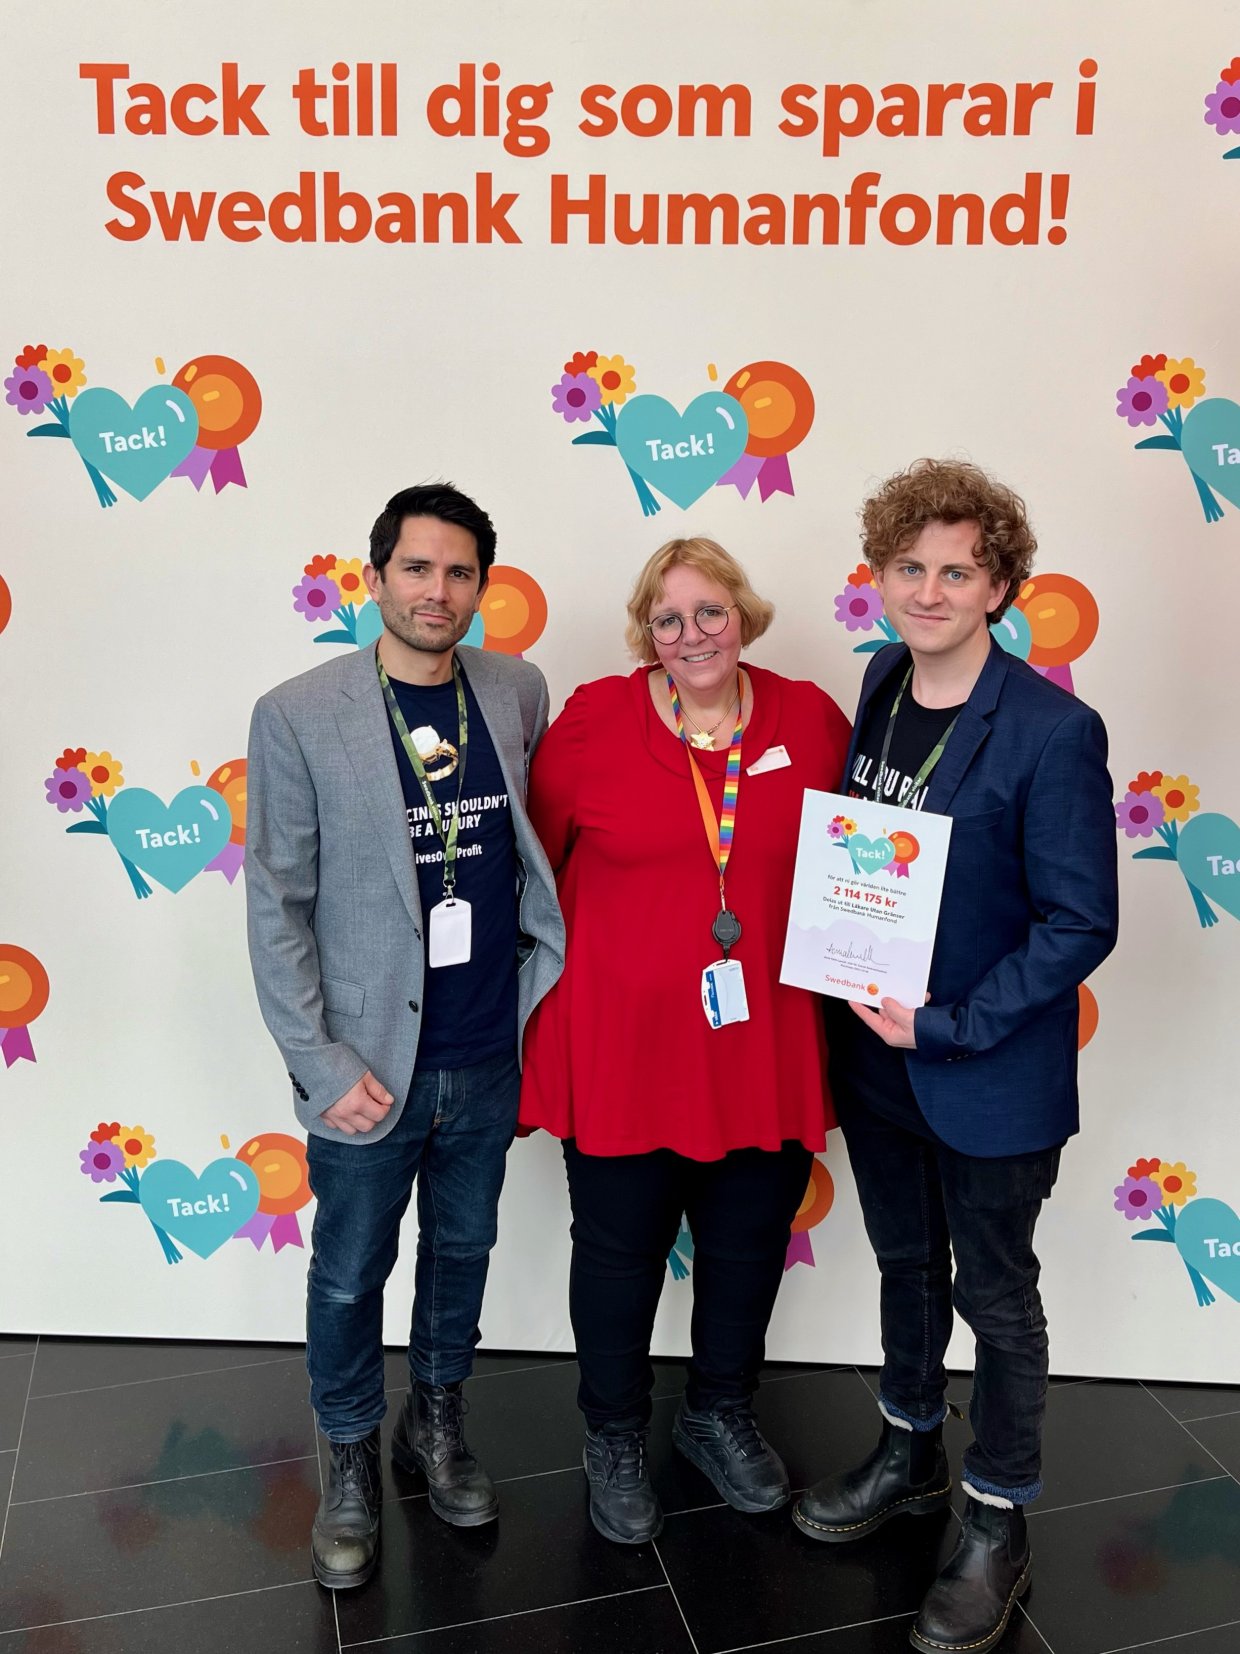 Två medarbetare från Läkare Utan Gränster står uppställda tillsammans med en representant från Swedbank Humanfond, de håller tillsammans ett diplom i handen